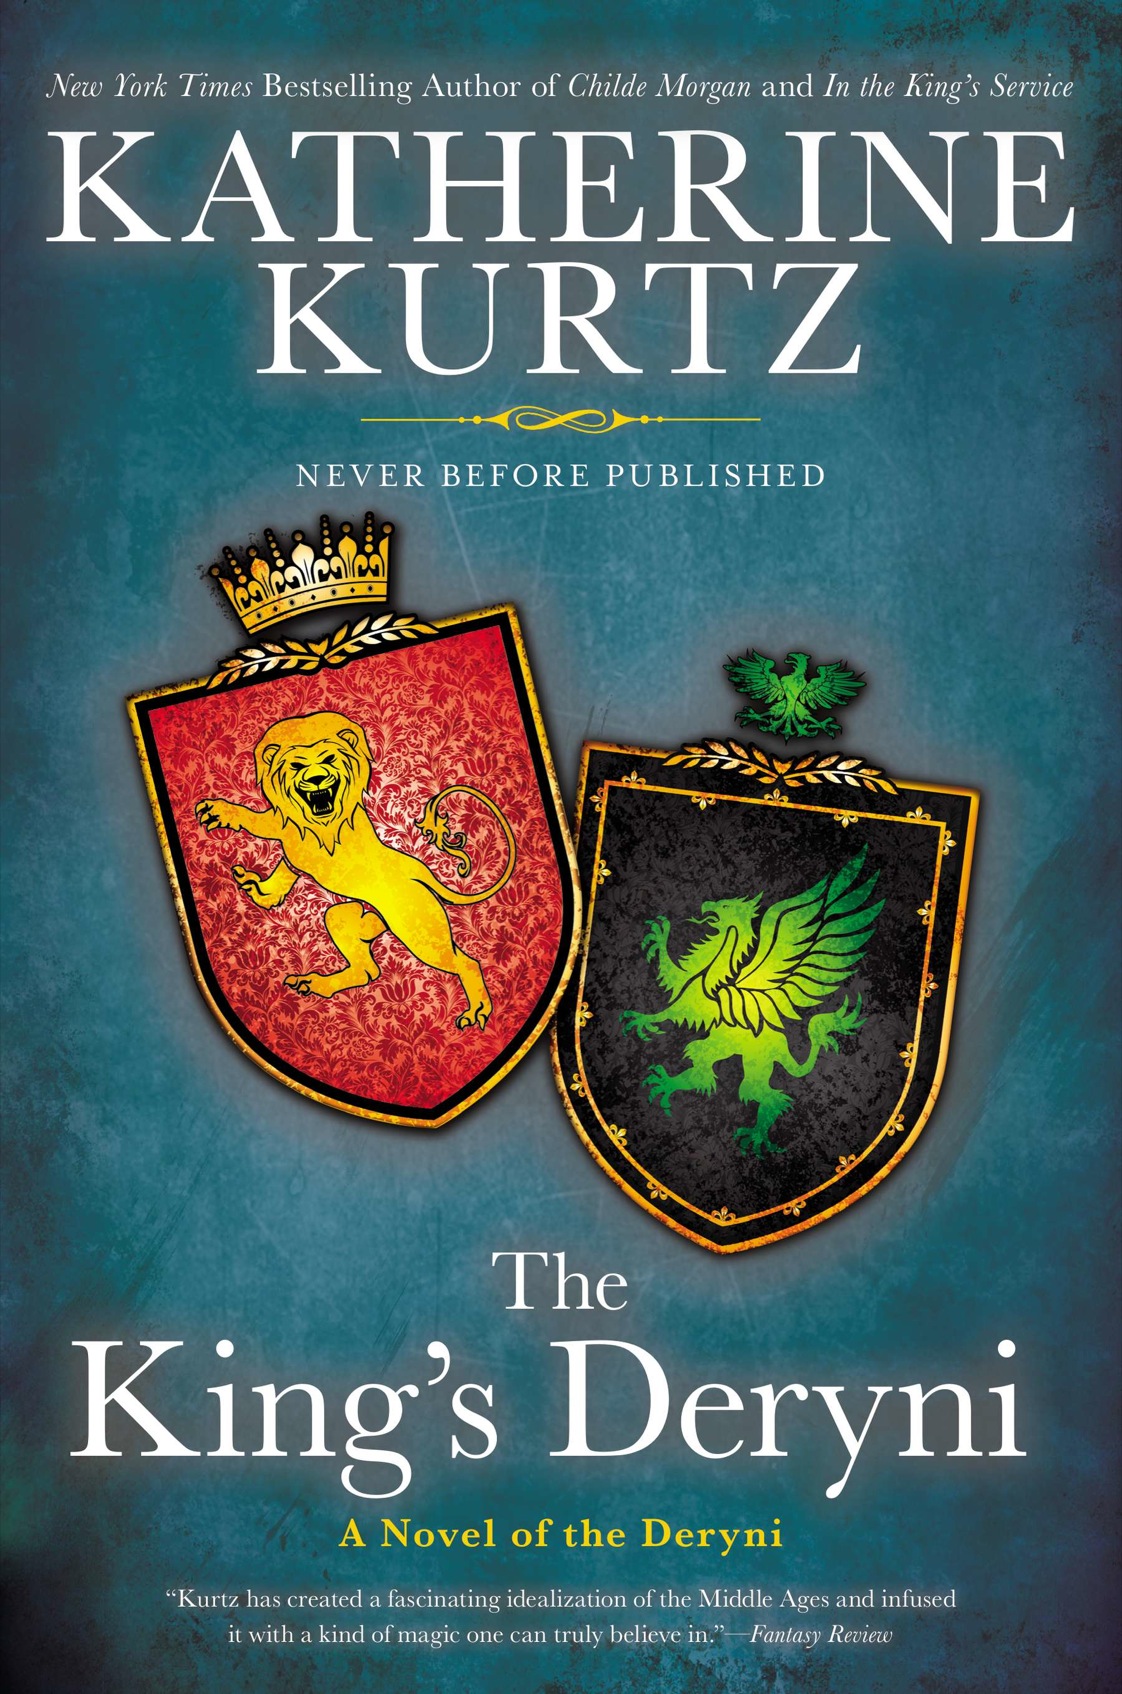 The King's Deryni (2014) by Katherine Kurtz